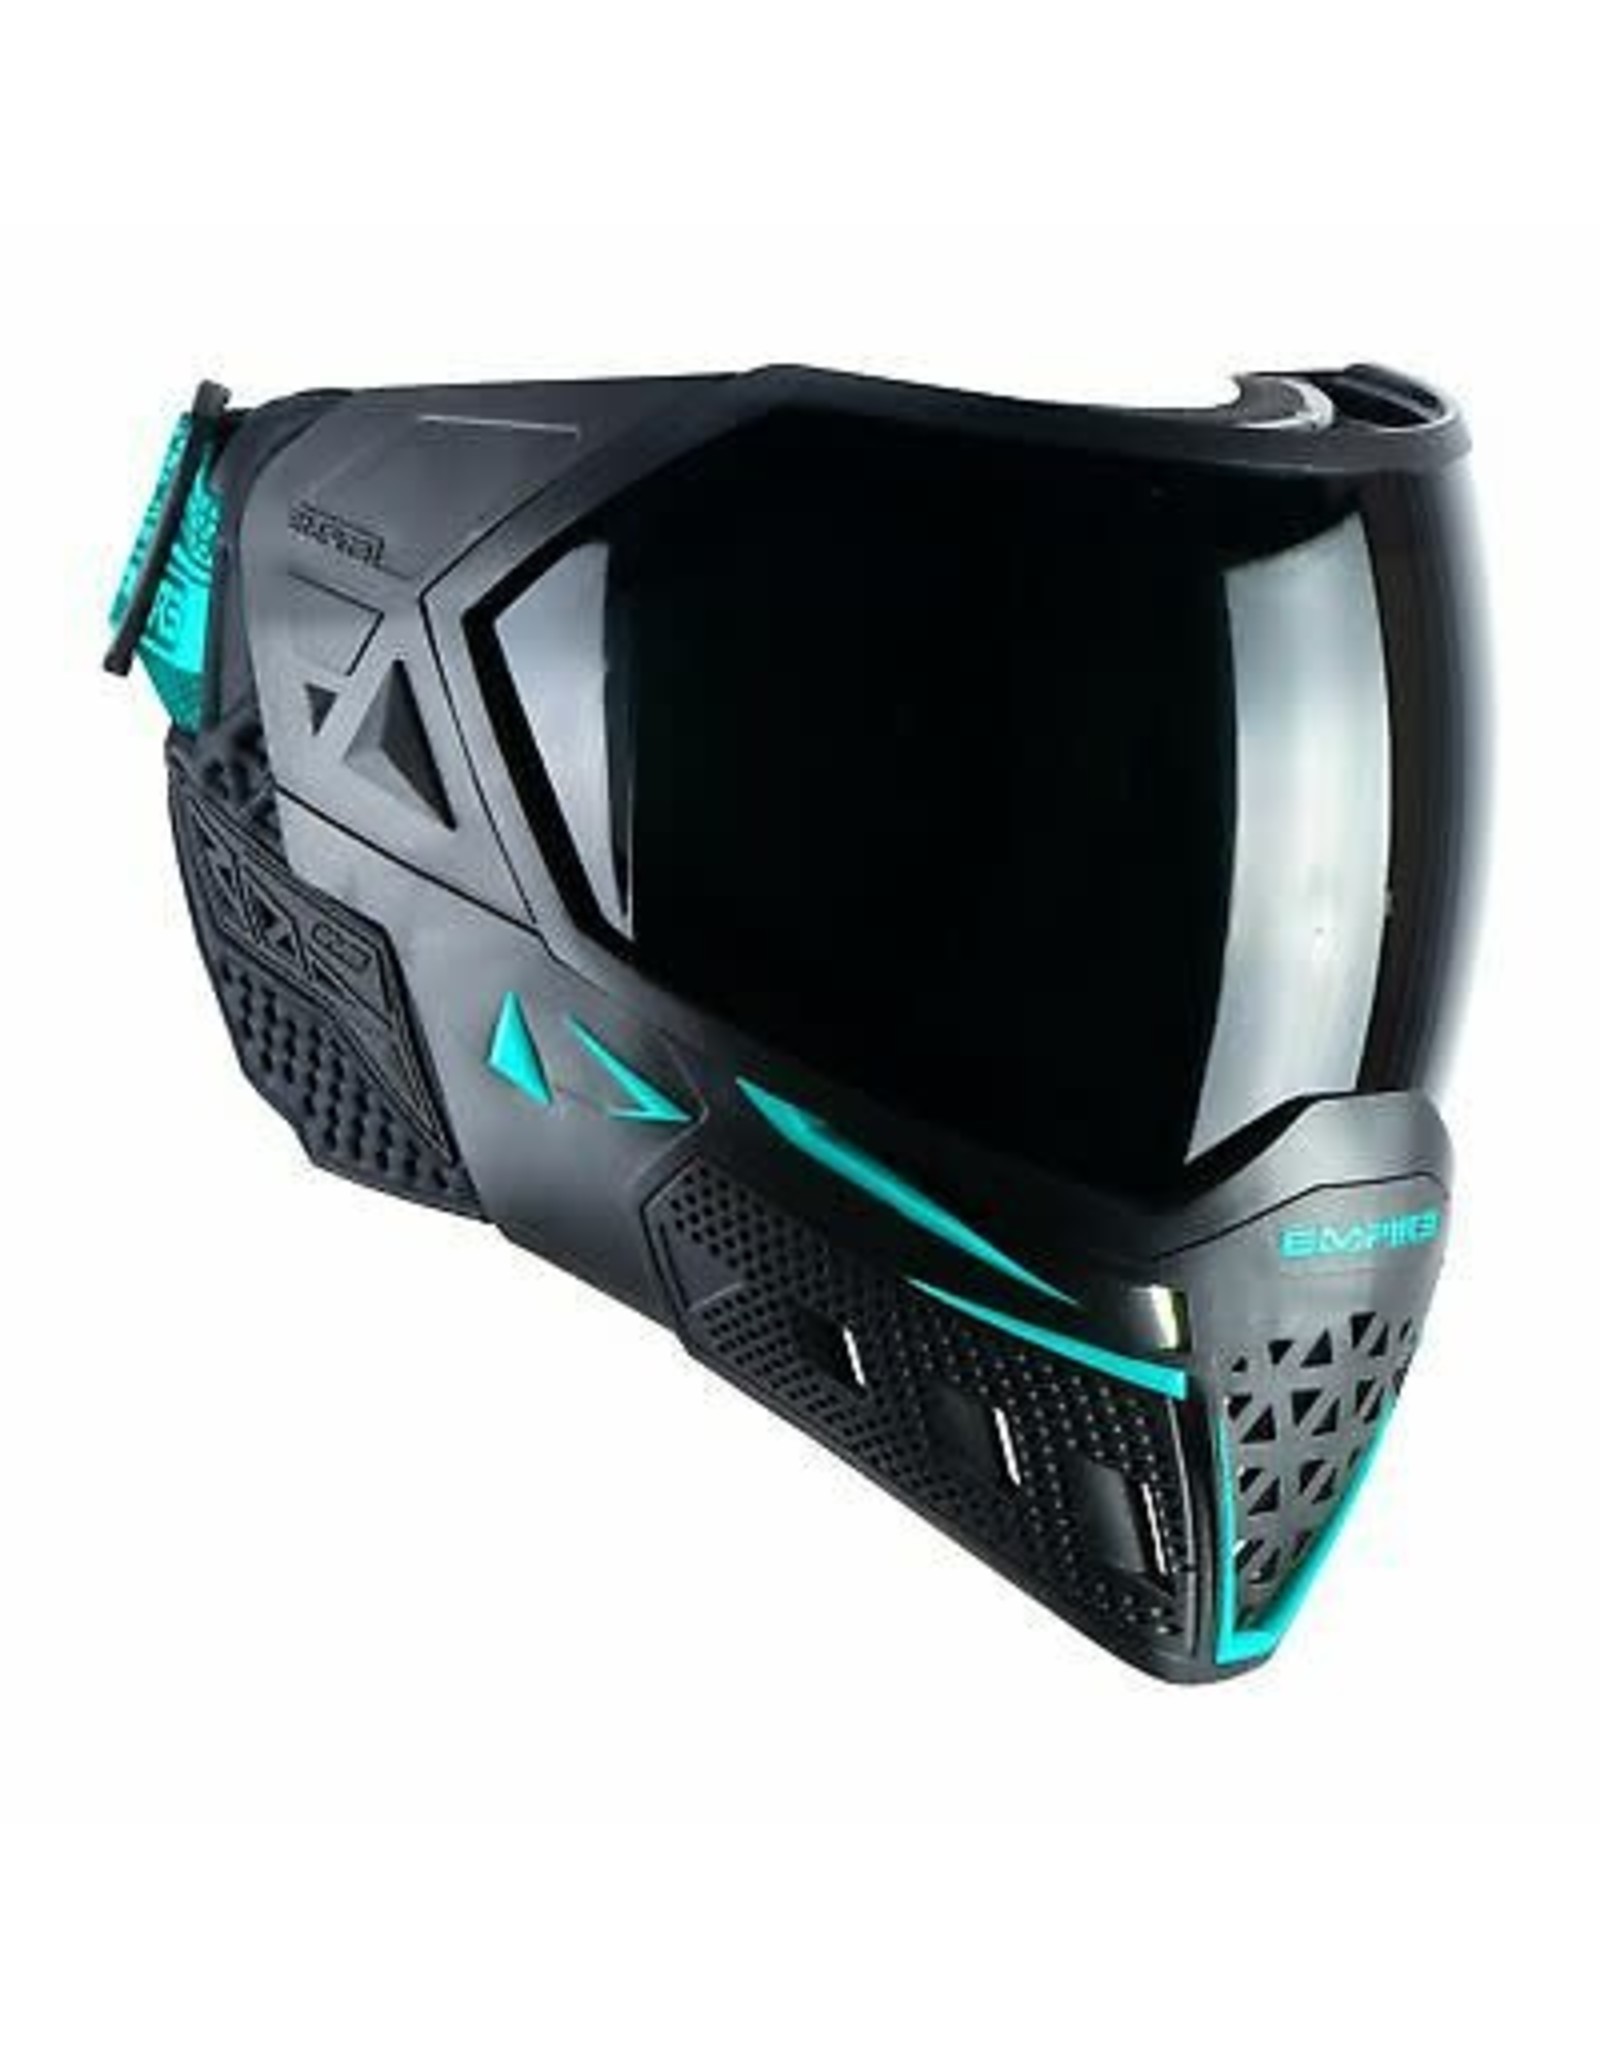 Empire Empire EVS Mask - Black / Aqua - W/ Thermal Clear & Ninja Lens